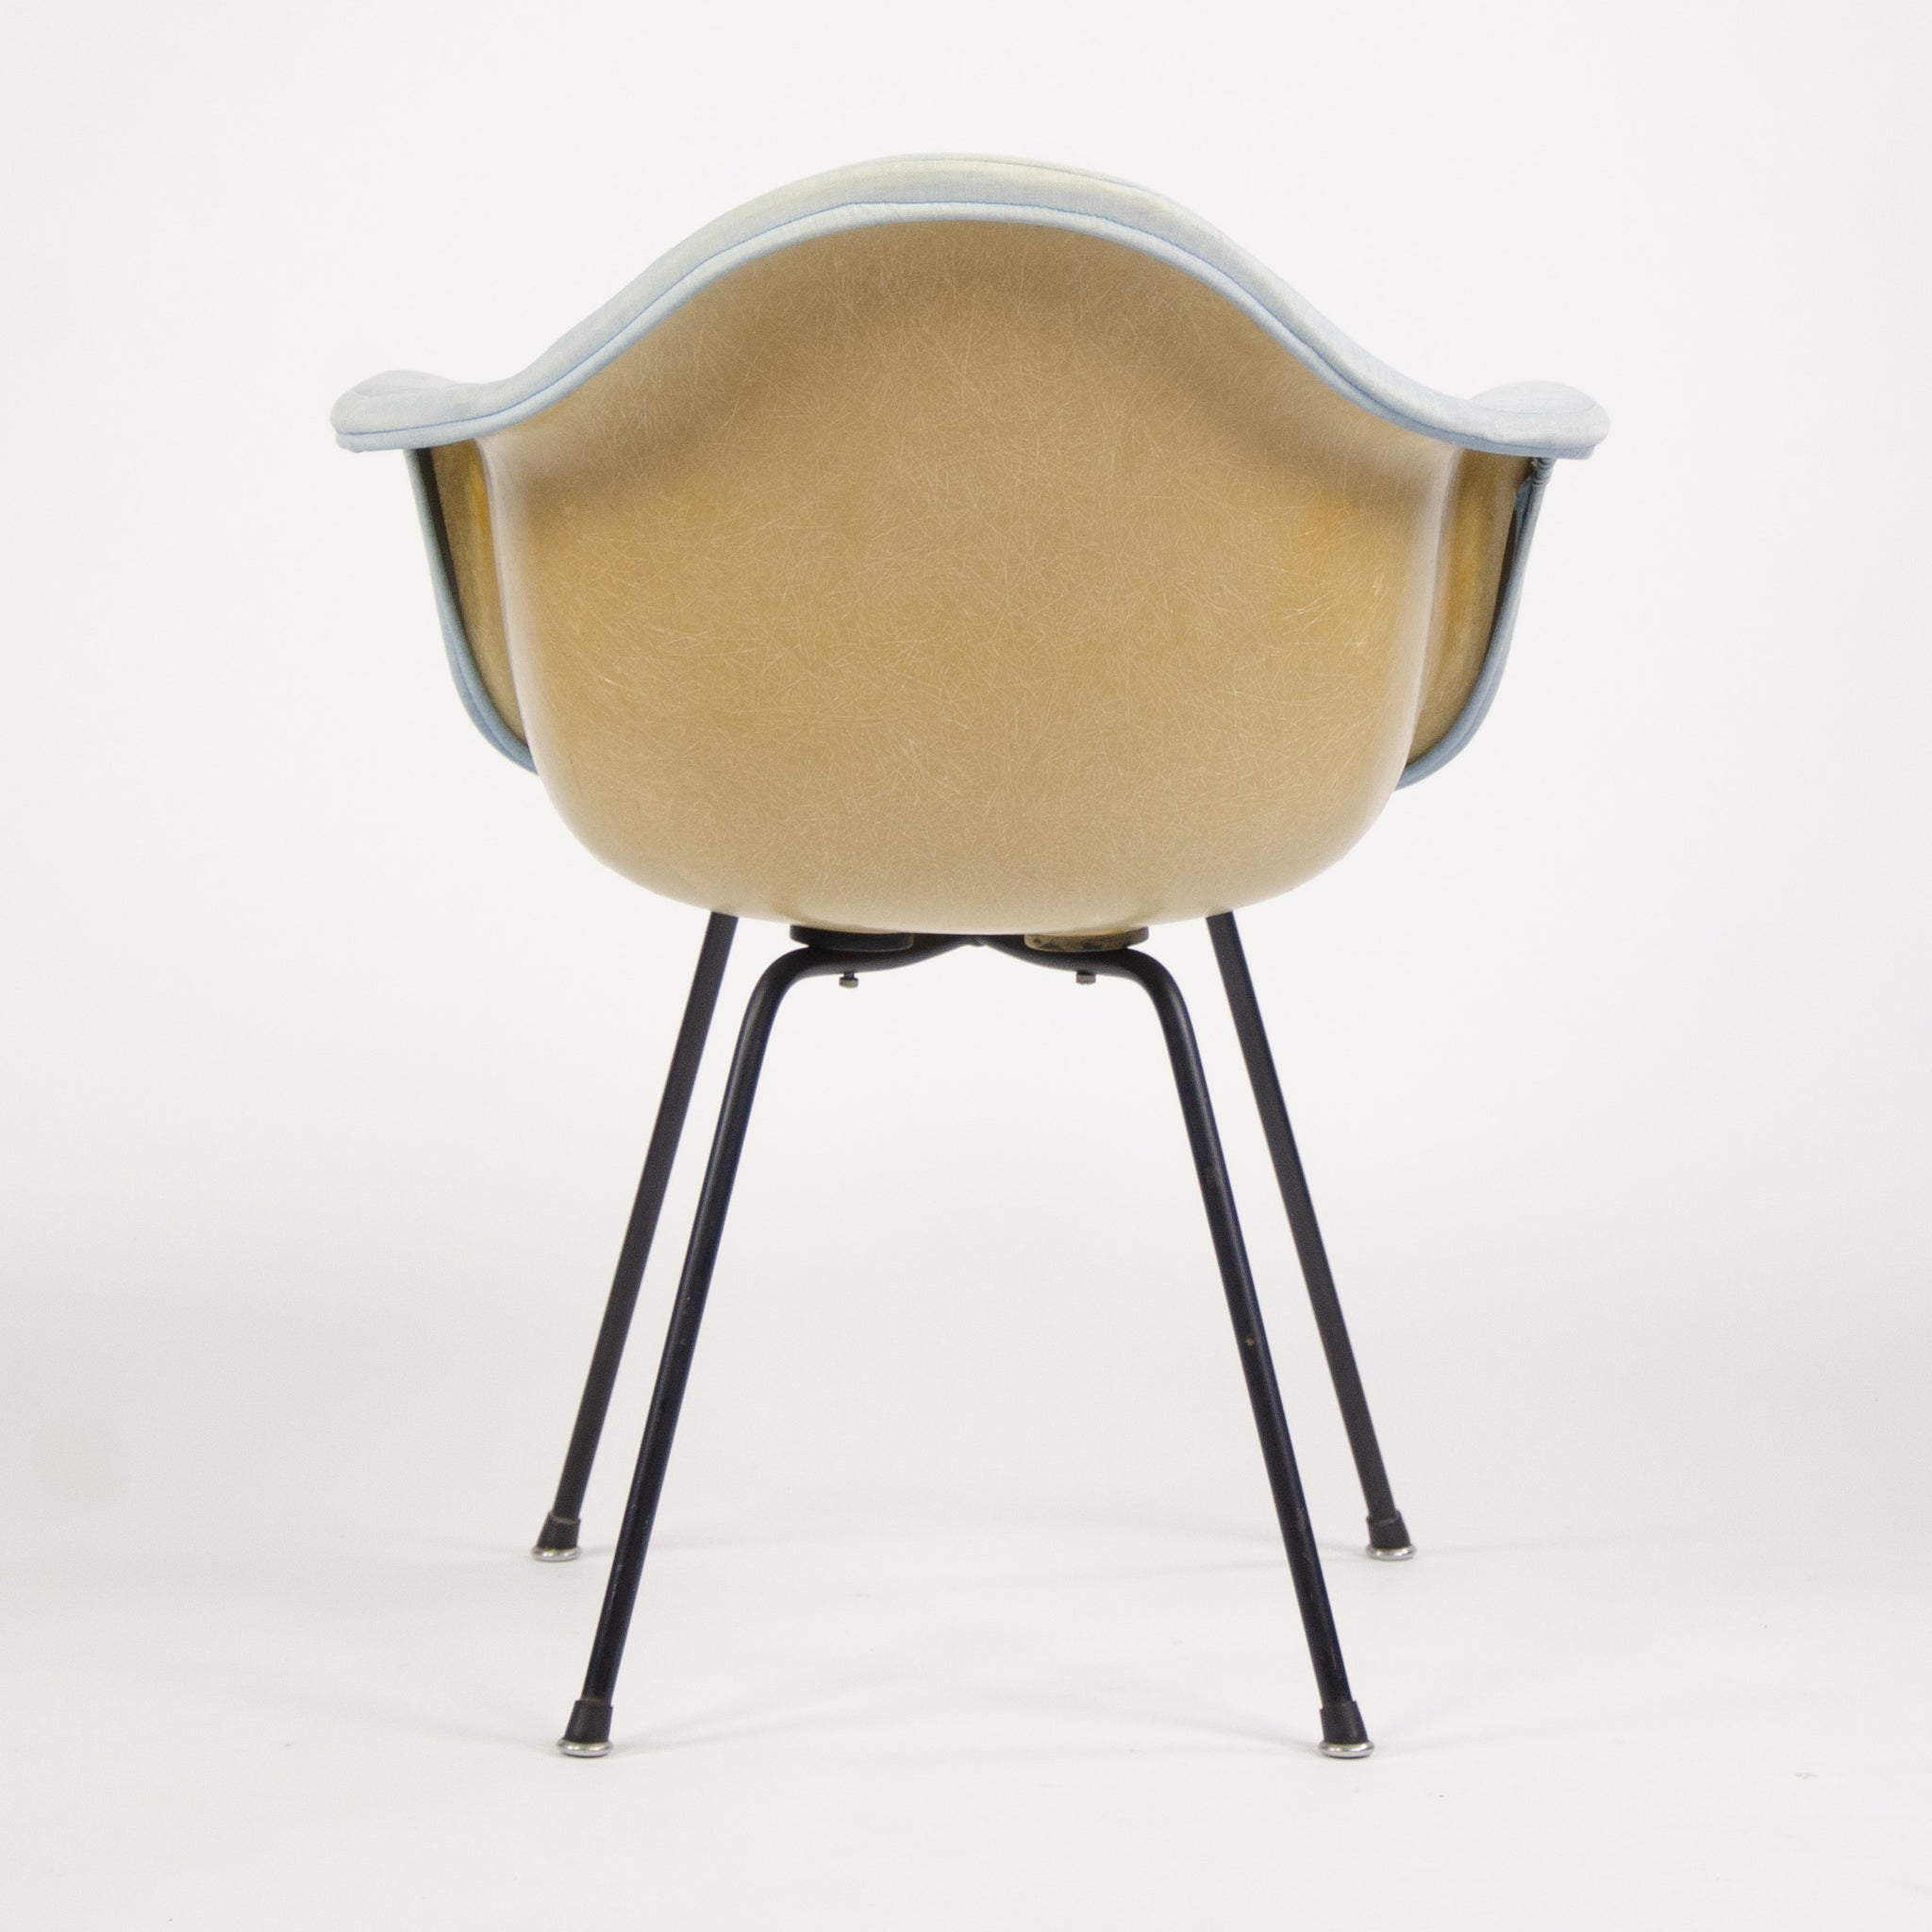 SOLD Eames Herman Miller 1953 Butterscotch Fiberglass Arm Shell Chair DAX-1 Zenith